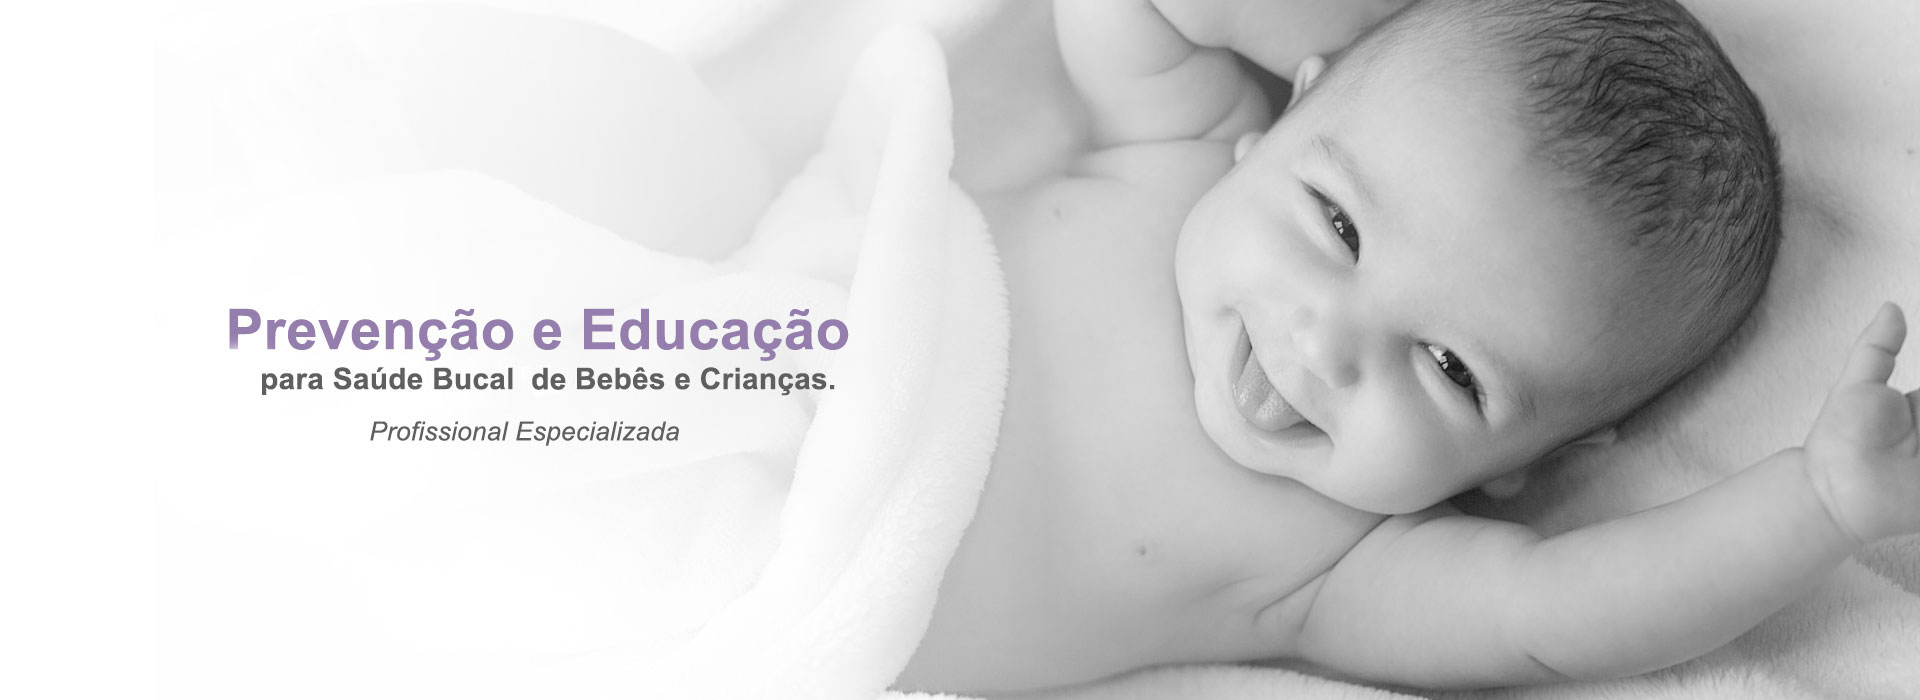 Prevenção e Educação para Saúde Bucal para Bebês e Crianças Sorocaba SP